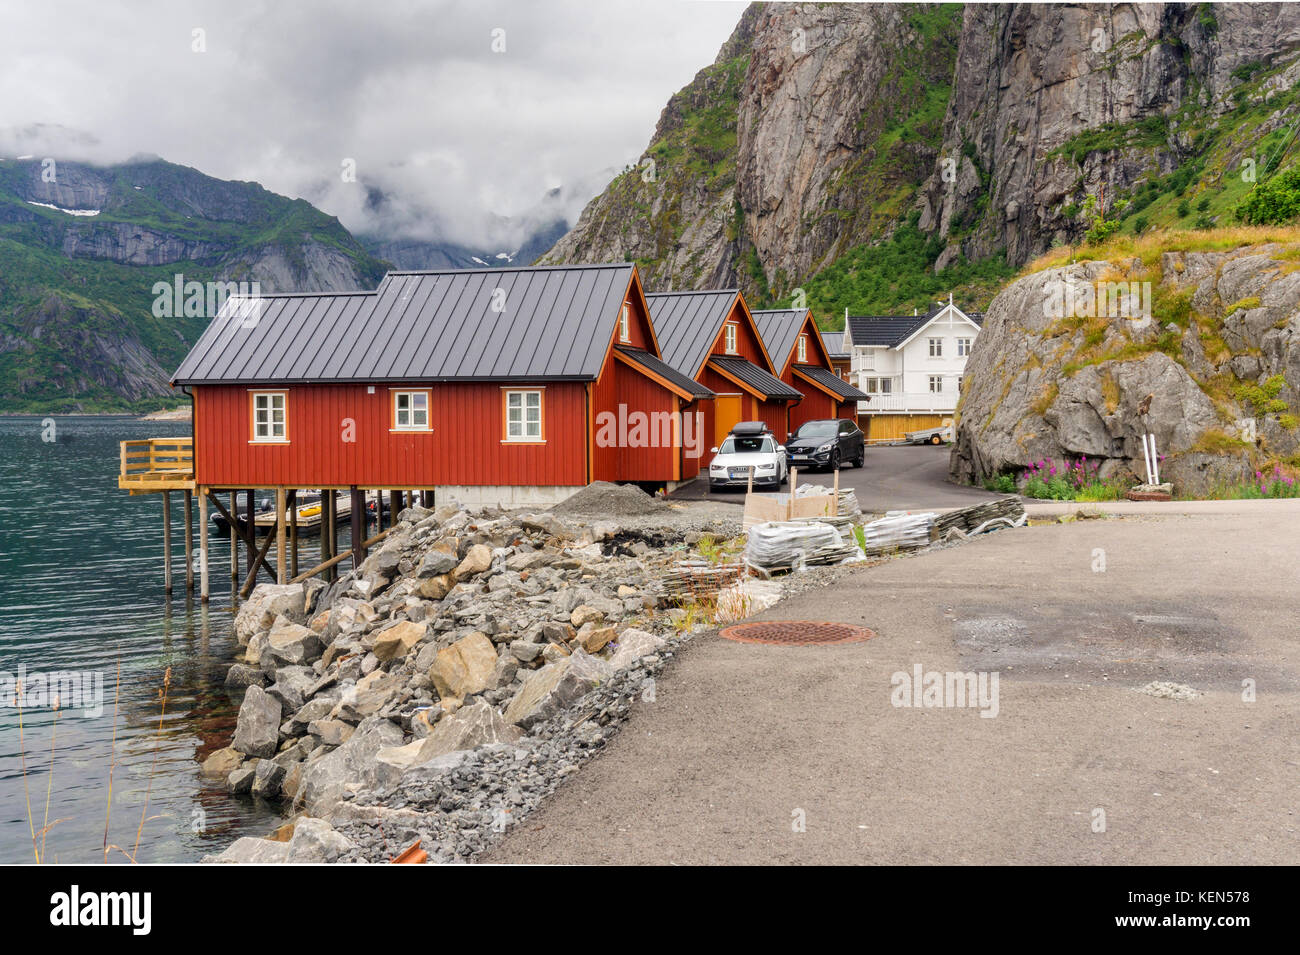 Tradizionale villaggio di pescatori nell'arcipelago delle Lofoten, nordland county, Norvegia. nazionale percorso turistico lofoten Foto Stock